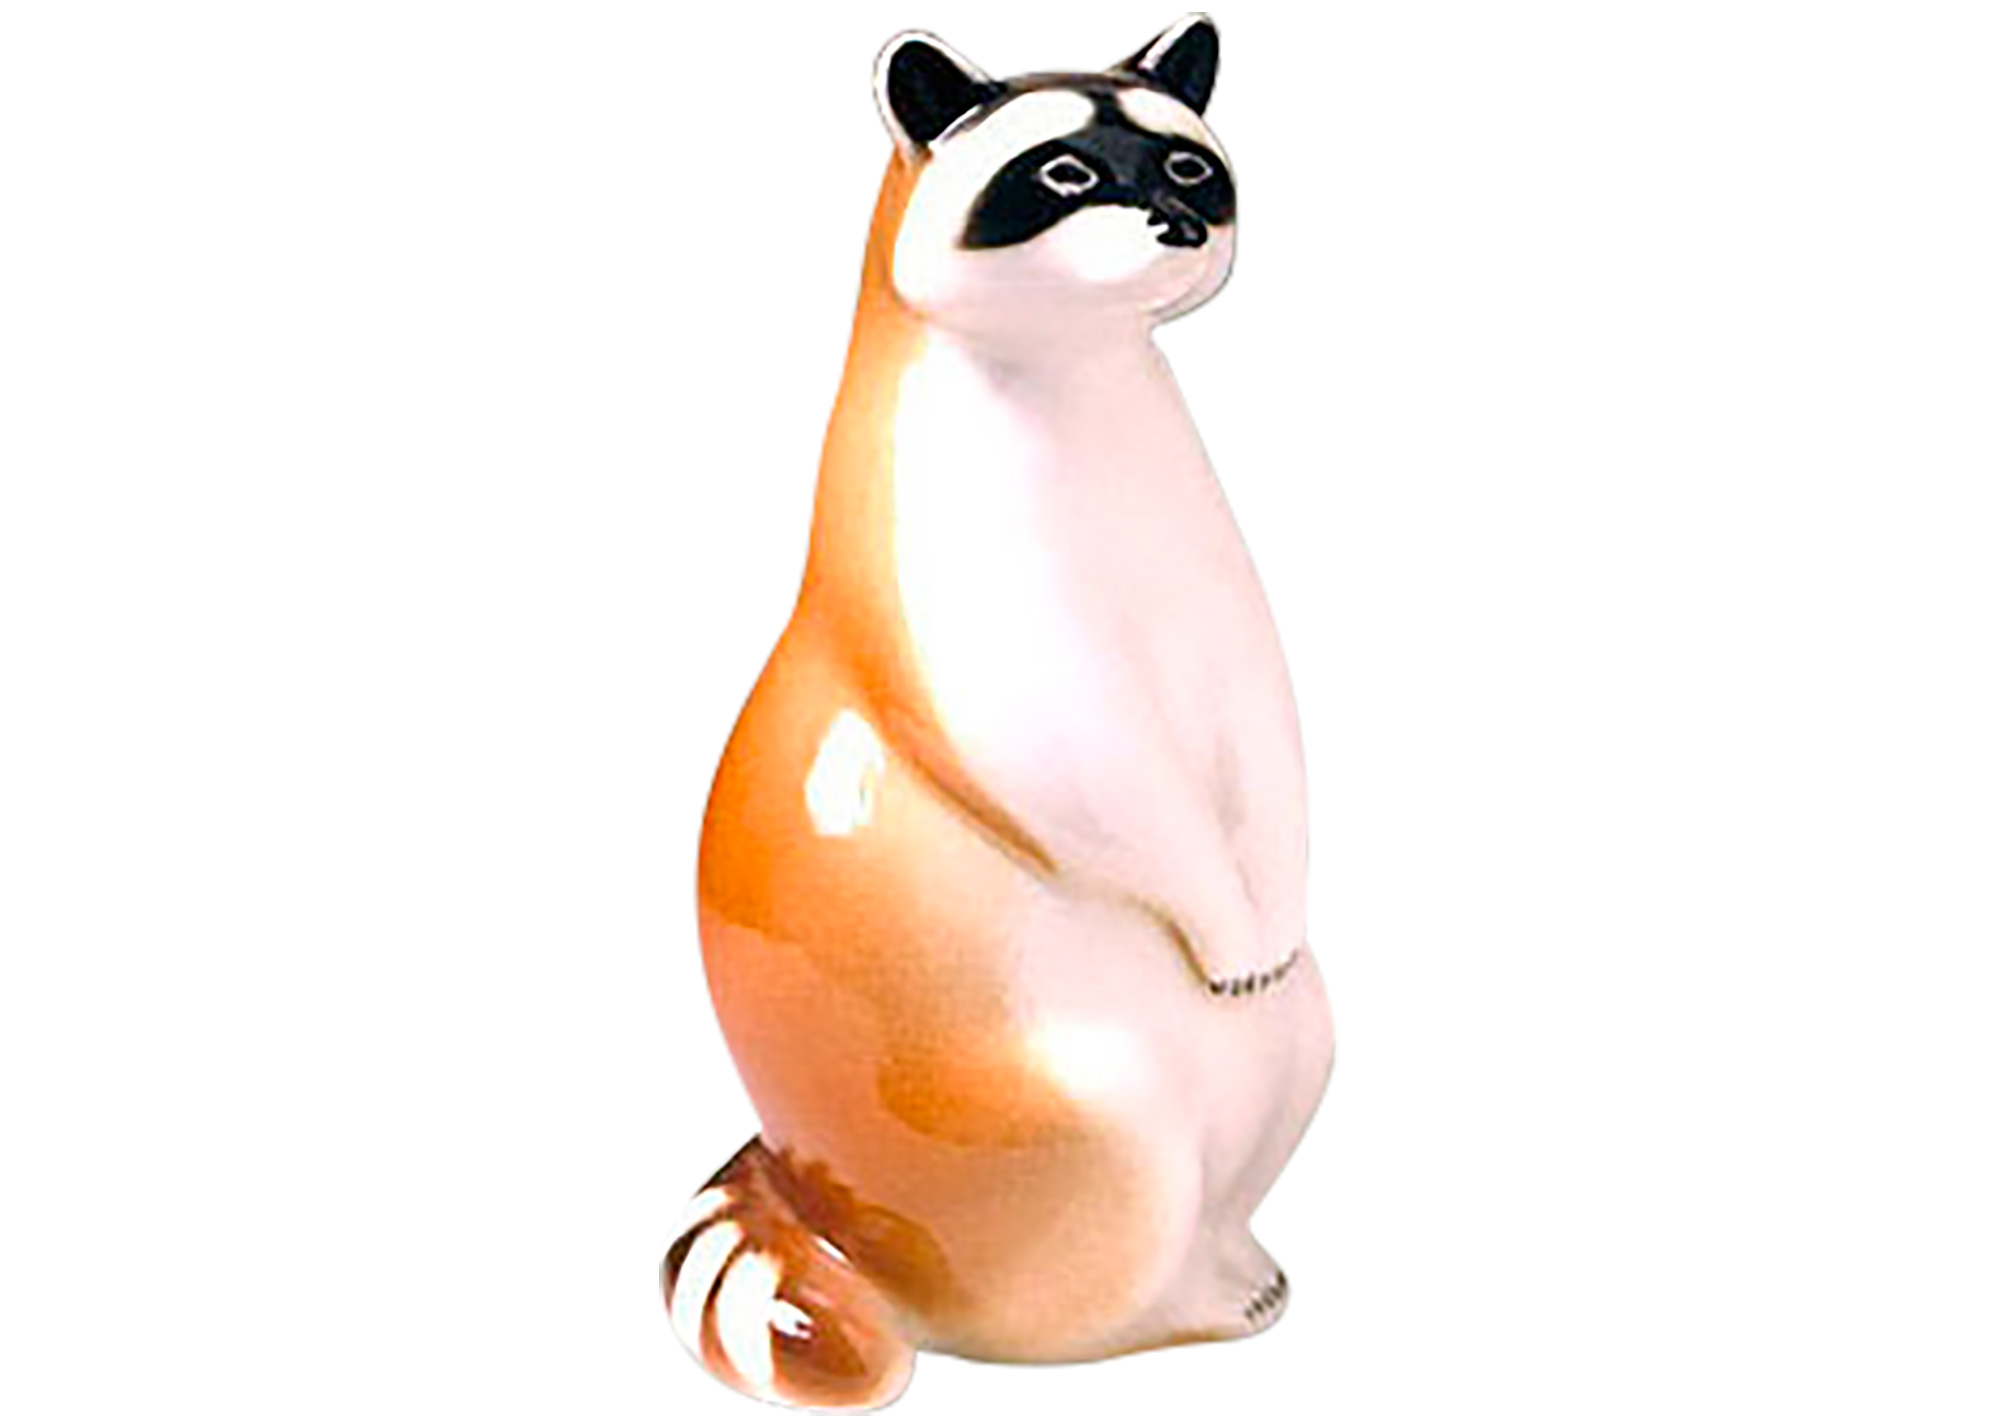 Buy Standing Raccoon Figurine at GoldenCockerel.com